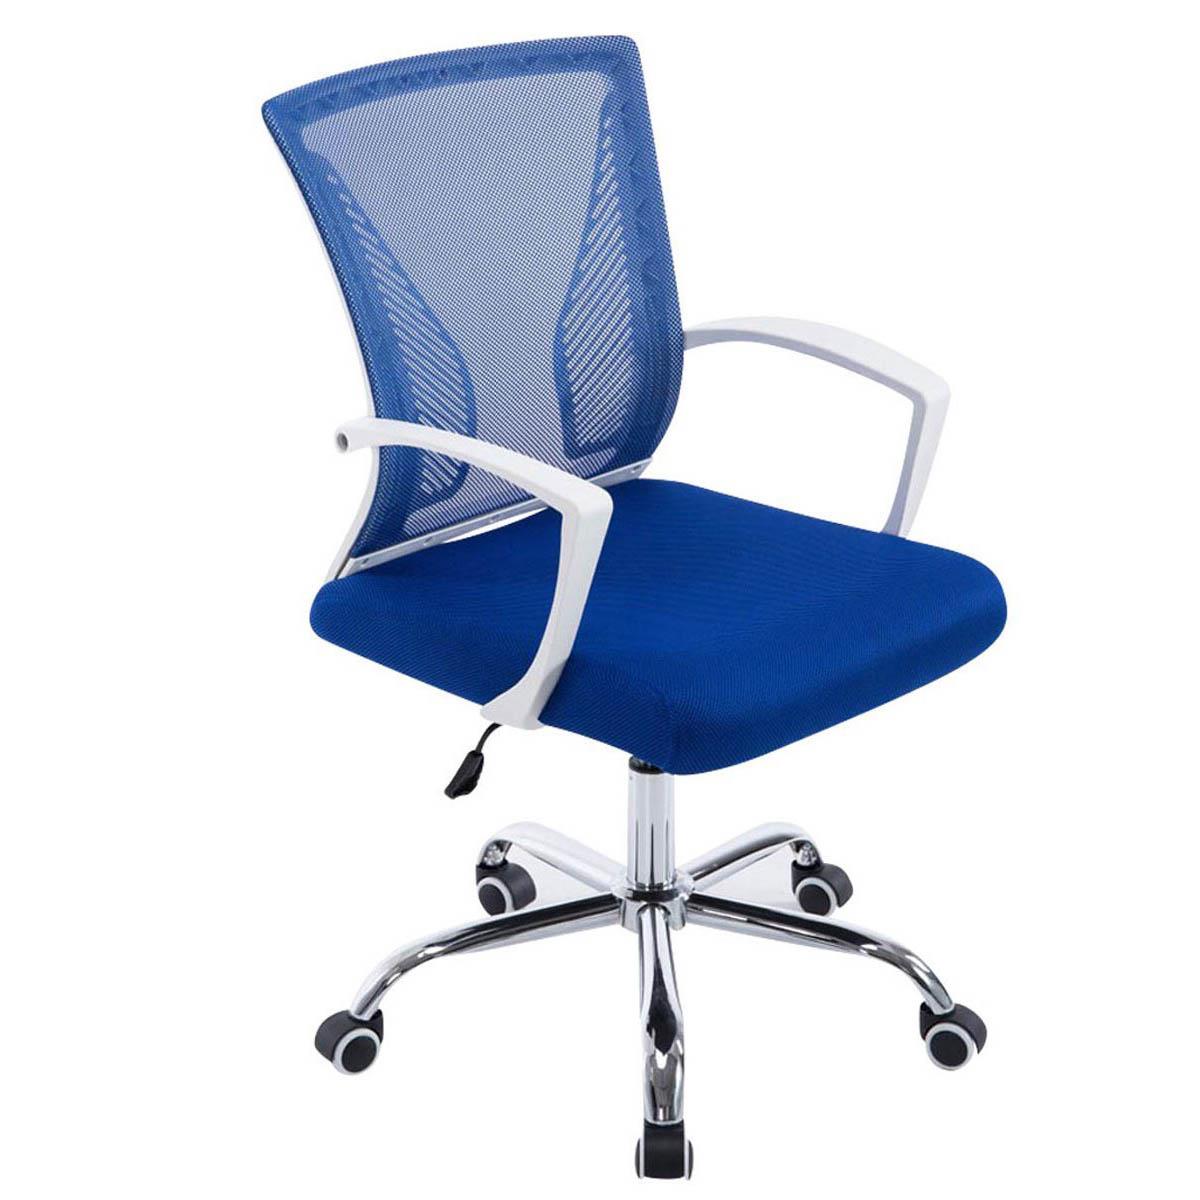 Chaise de bureau CUBA, Structure Métallique, en Maille Respirable, Bleu